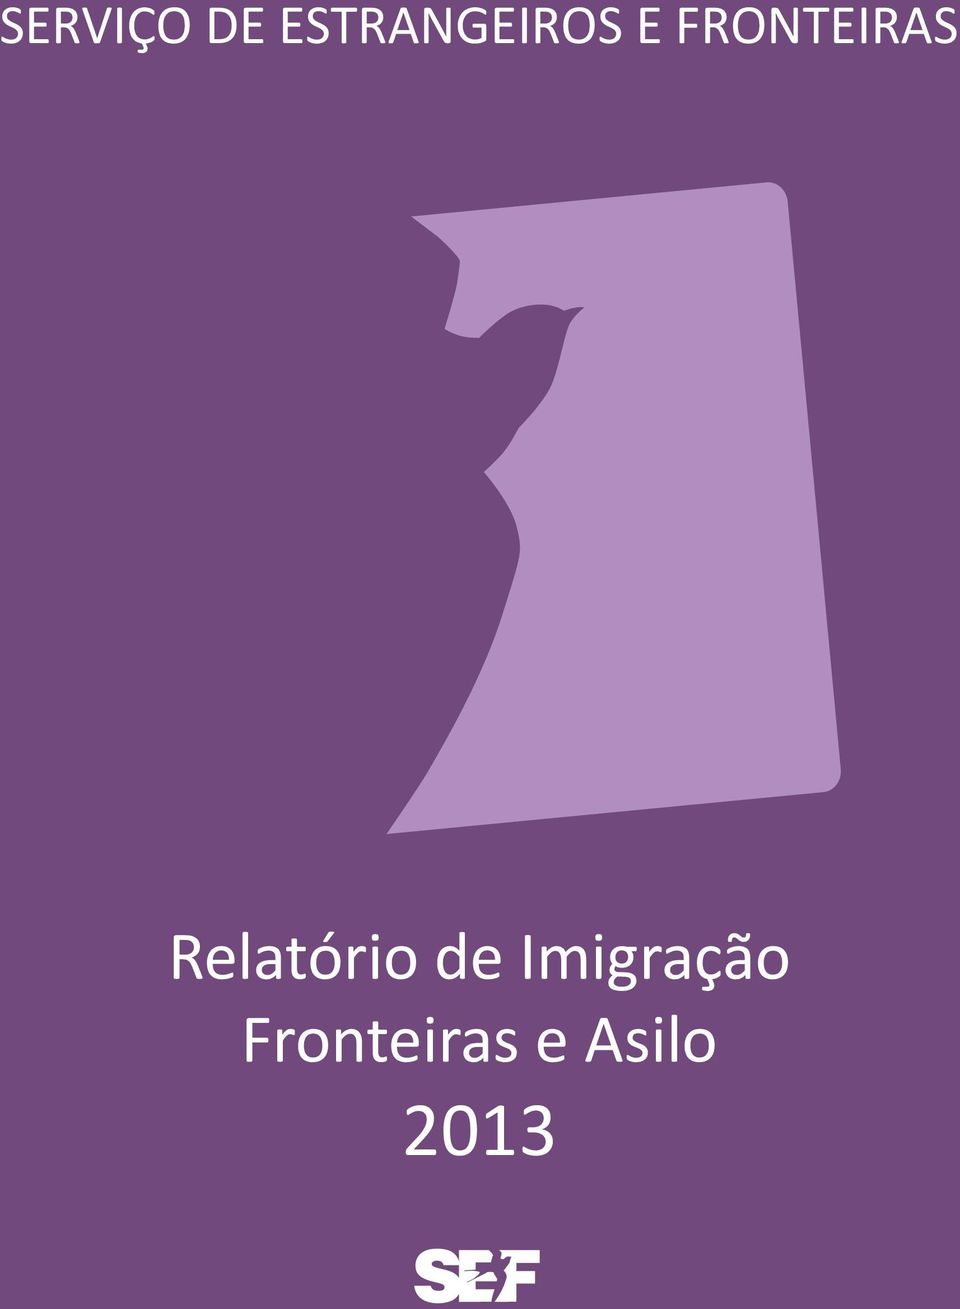 FRONTEIRAS Relatório